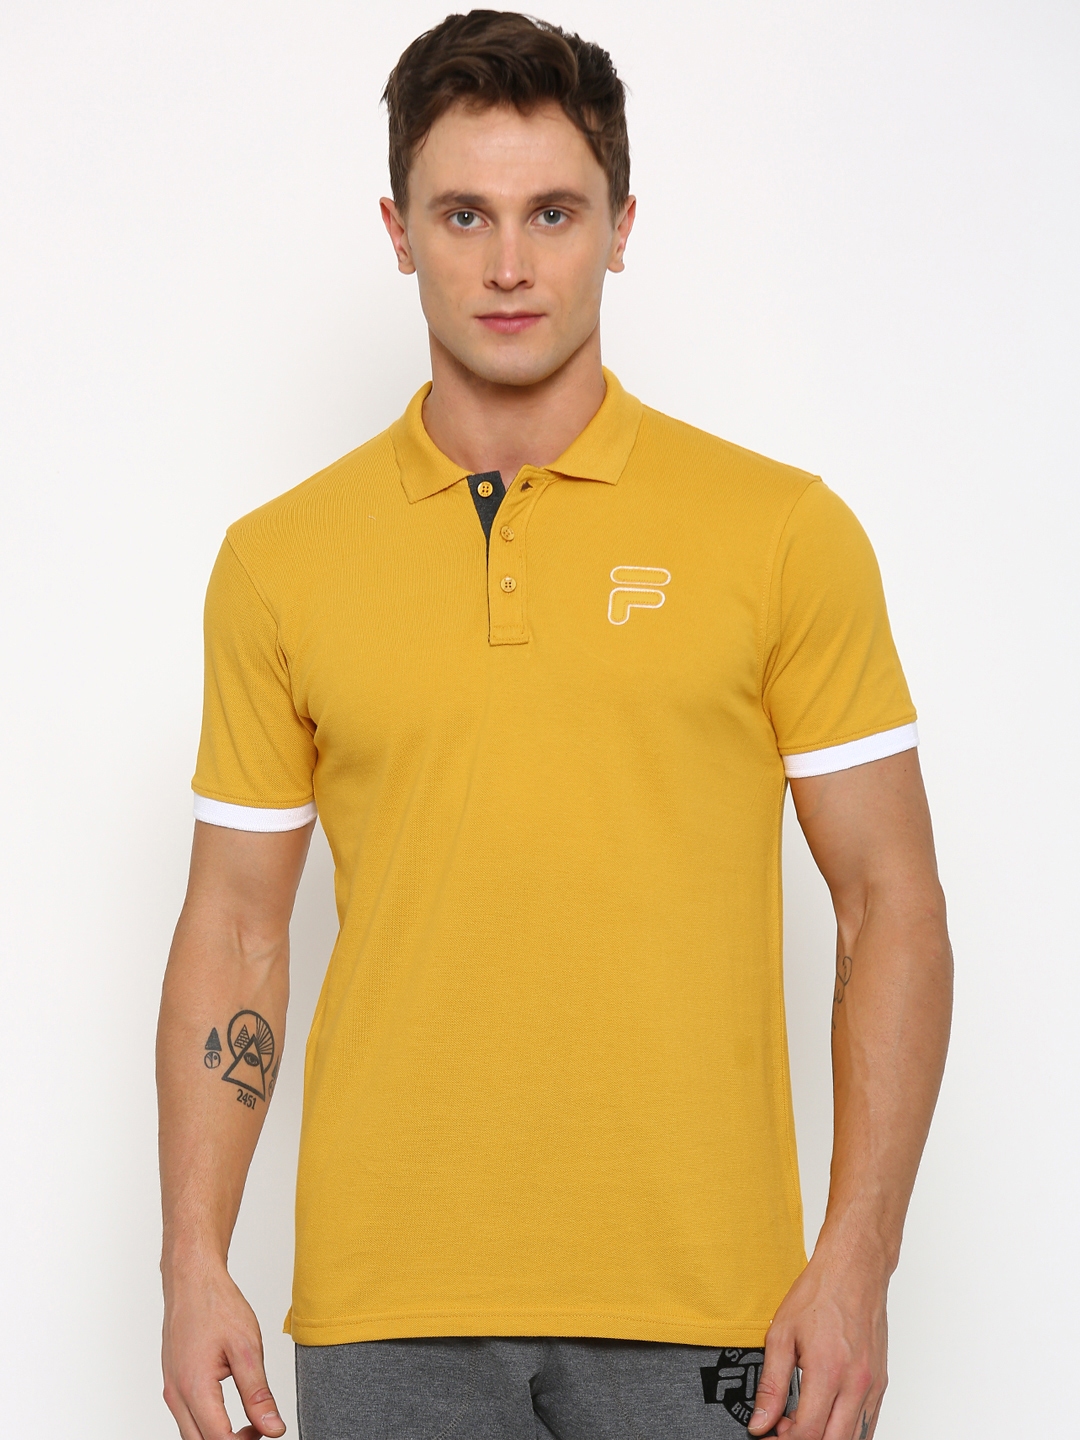 yellow fila shirts